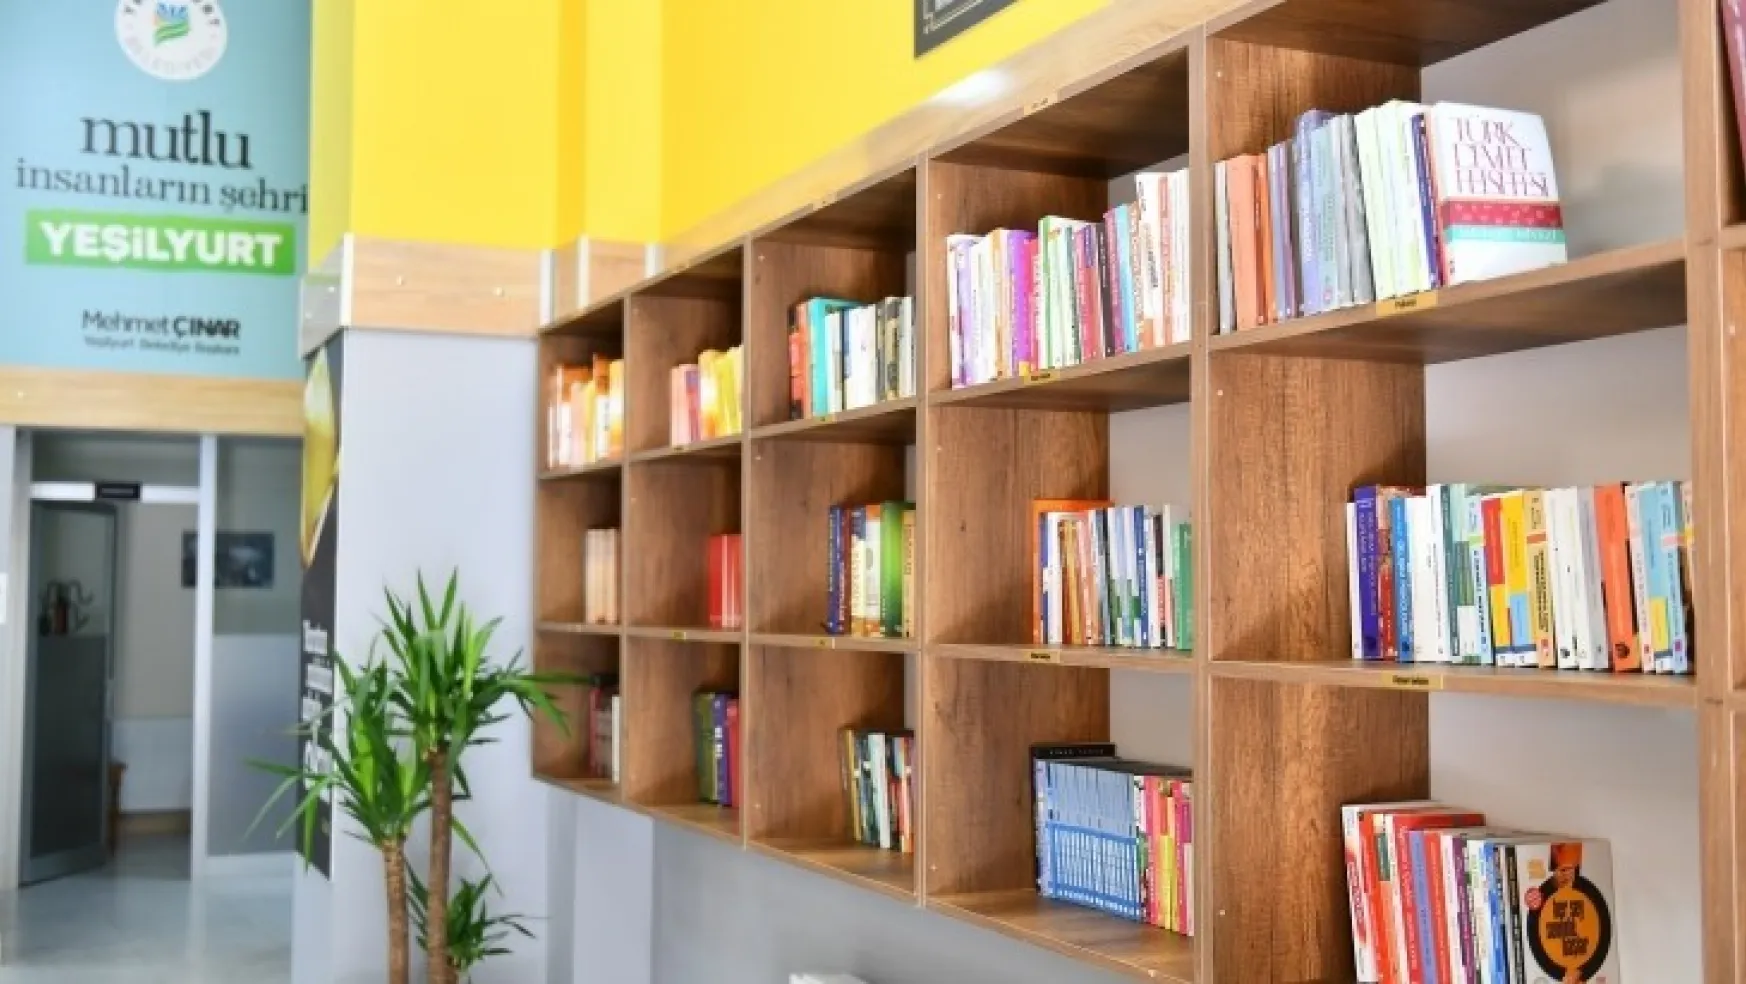 Yeşilyurt Belediyesi Çukurdere Kitap Kafe, Yoğun İlgi Görmeye Devam Ediyor